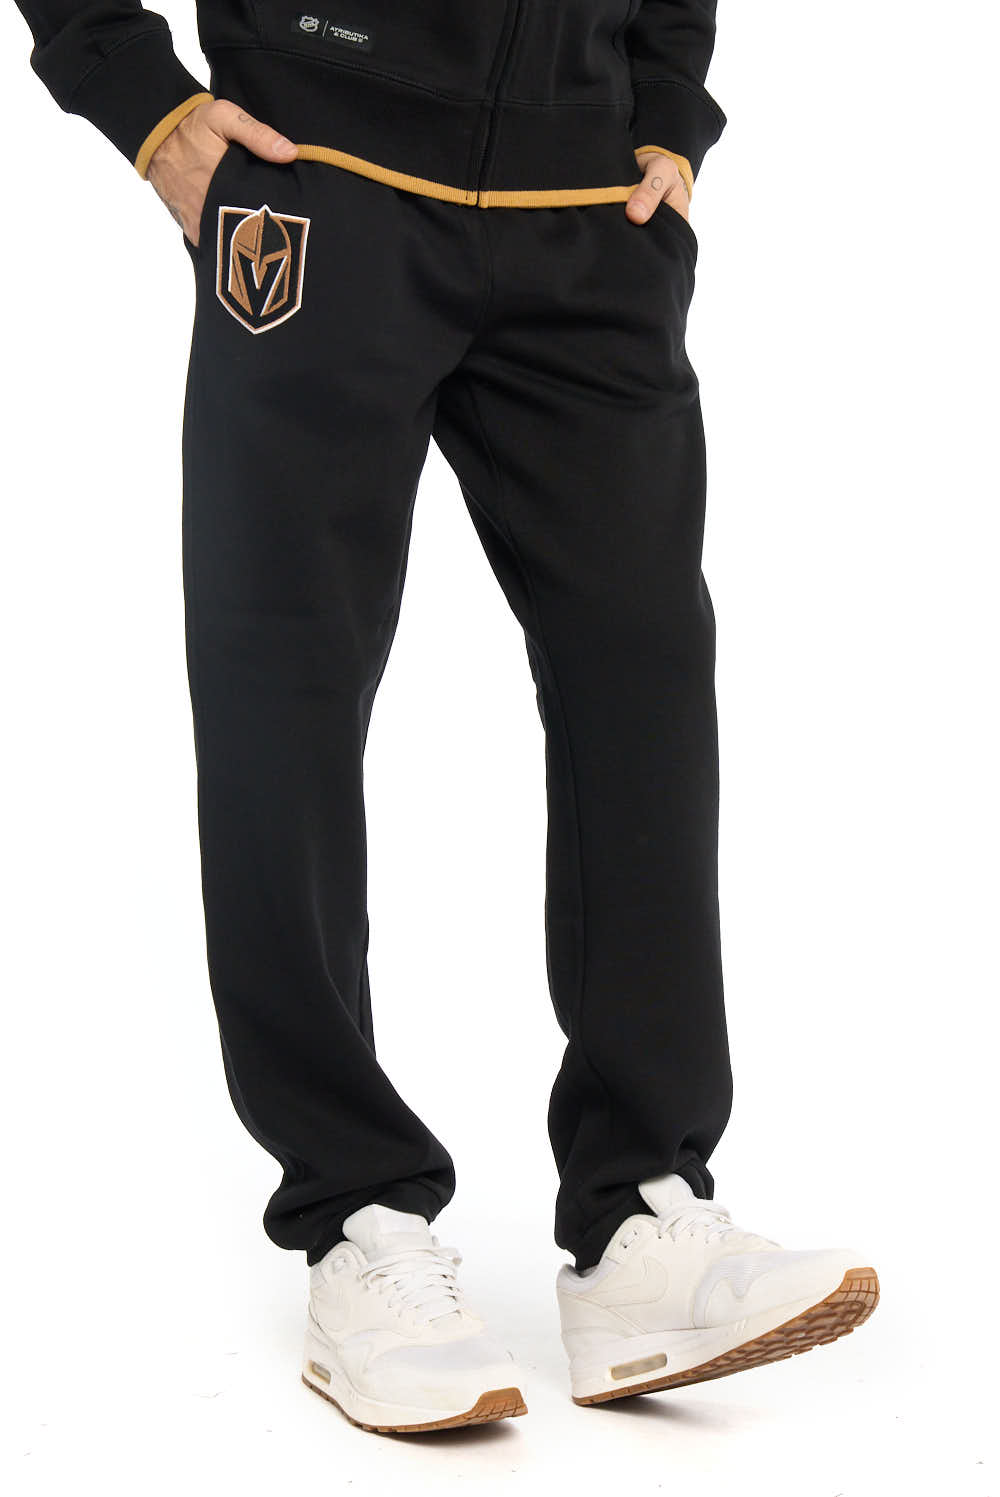 Спортивные брюки мужские Atributika&Club Вегас Голден Найтс 46350 черные L